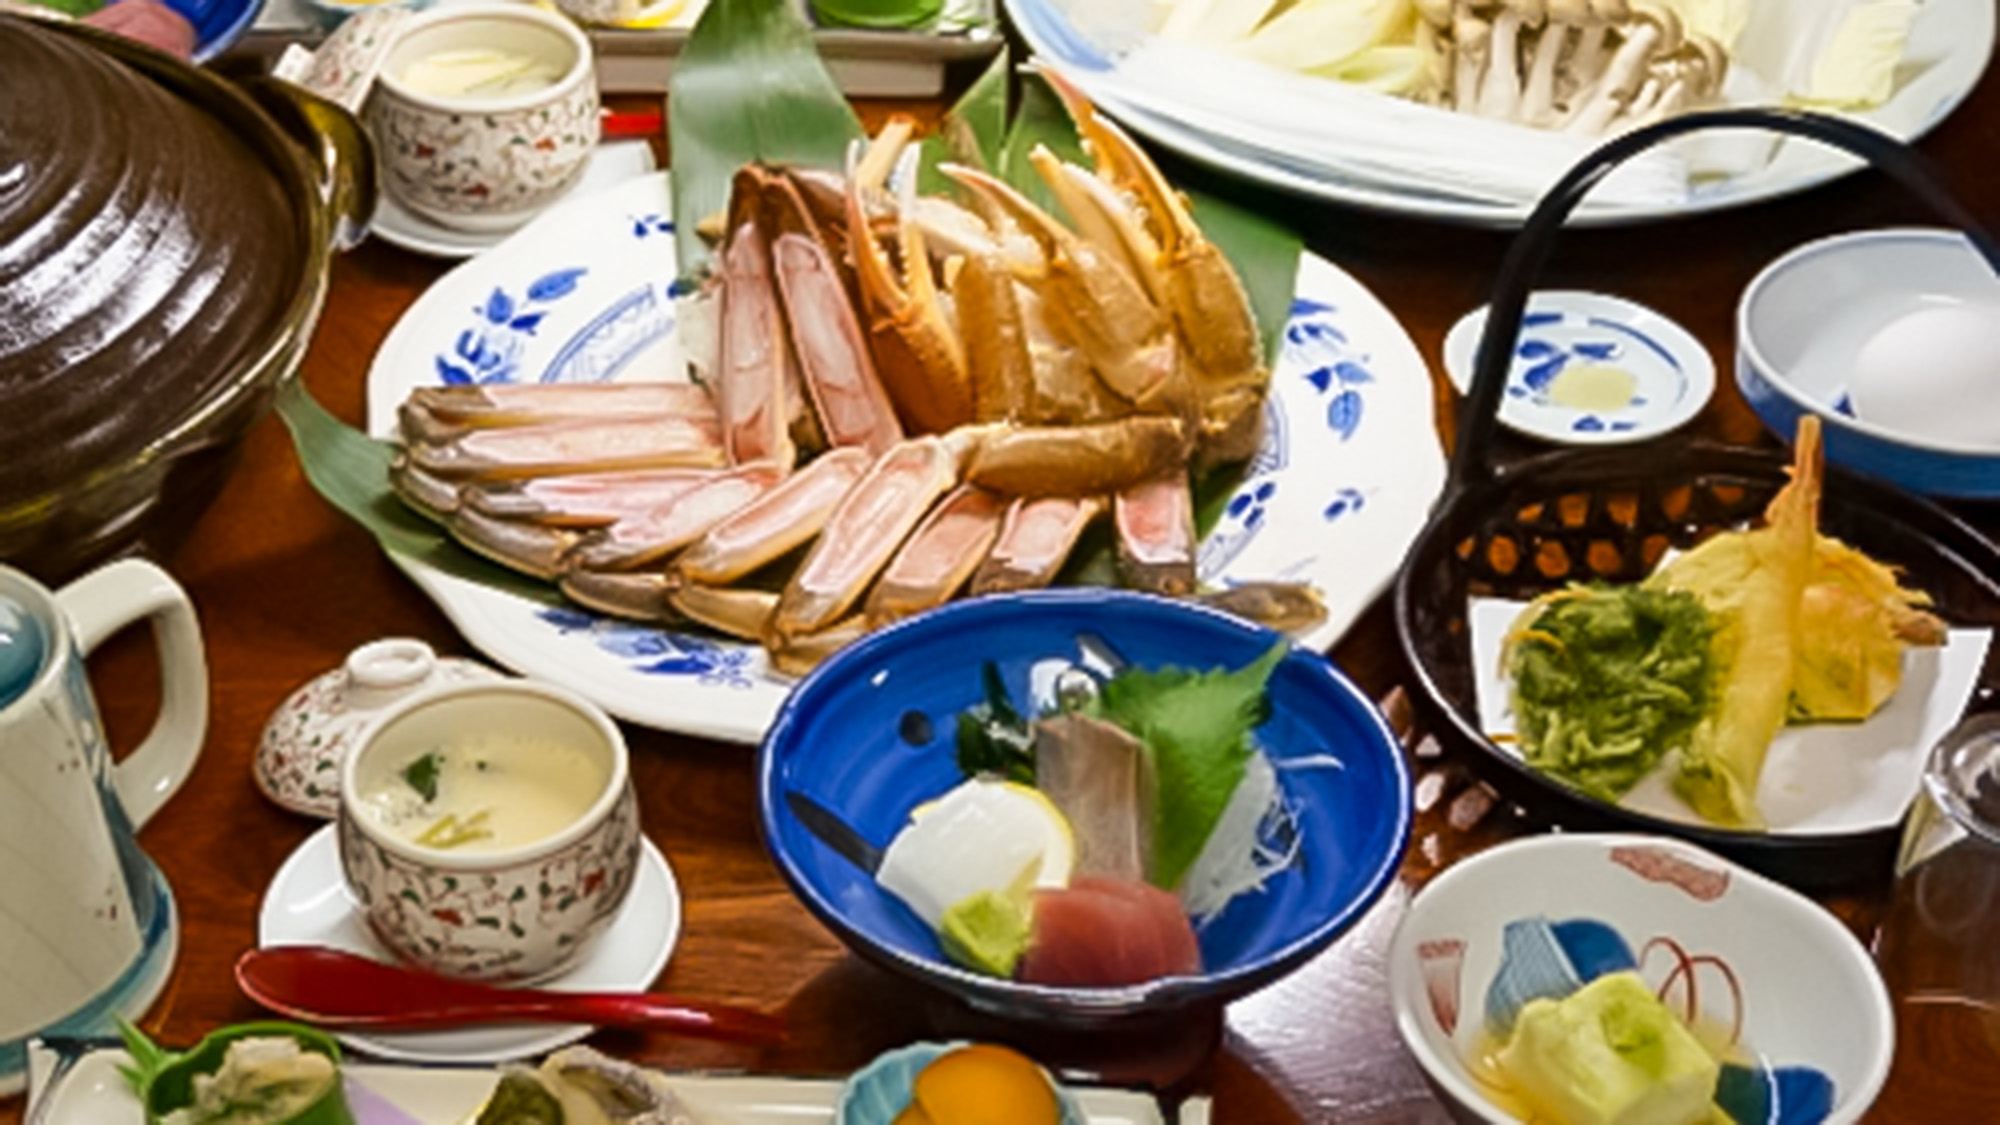 ・【お食事一例・かにすきコース】日本海の海の幸をたっぷりとご堪能ください